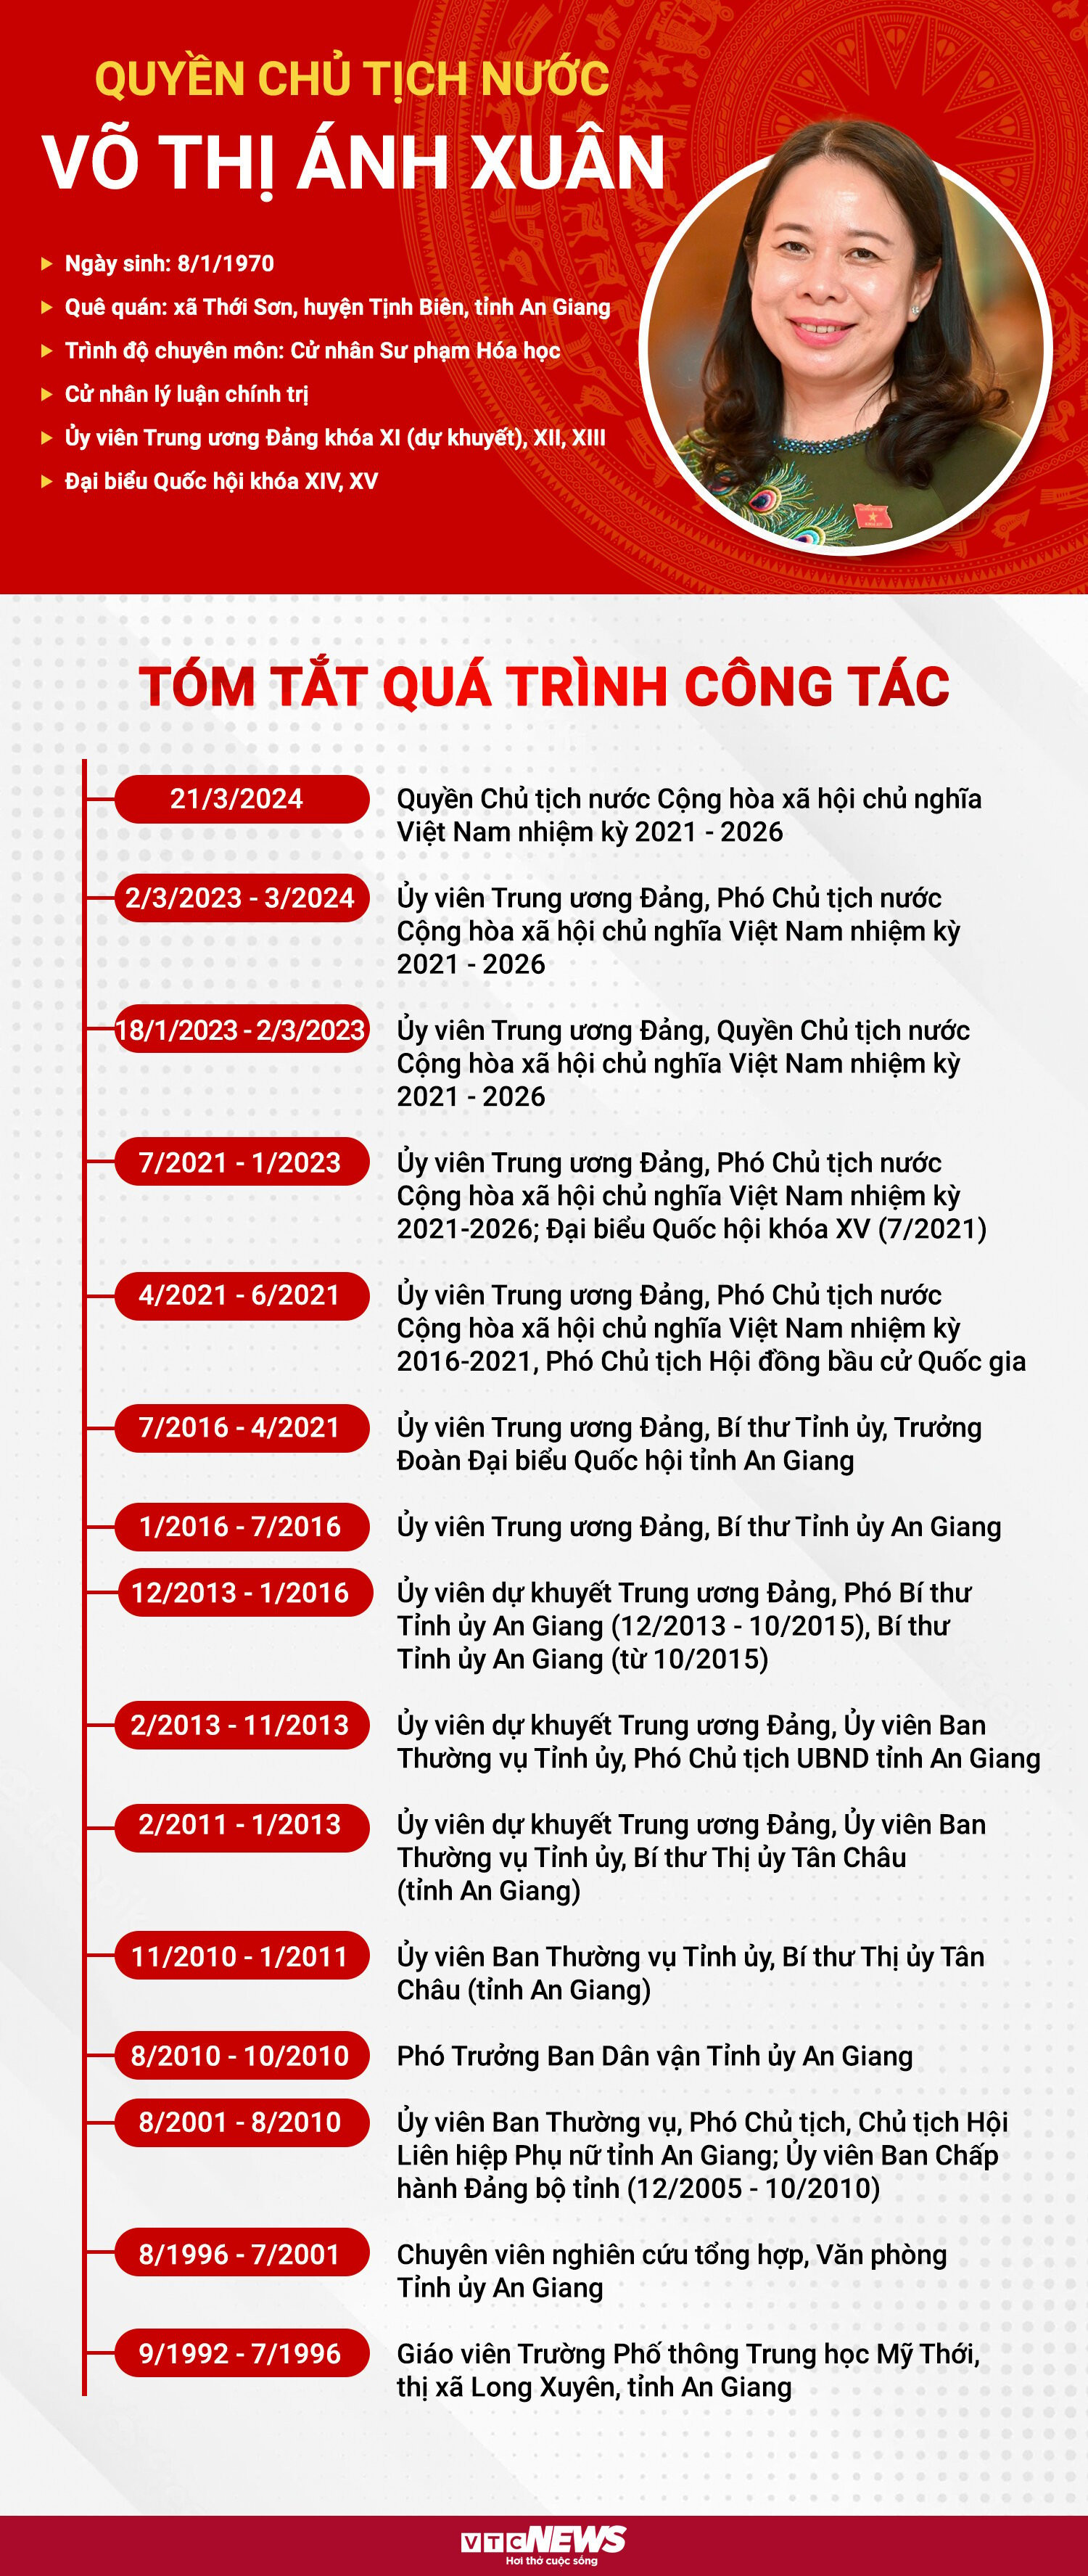 Infographic: Chân dung quyền Chủ tịch nước Võ Thị Ánh Xuân - 1